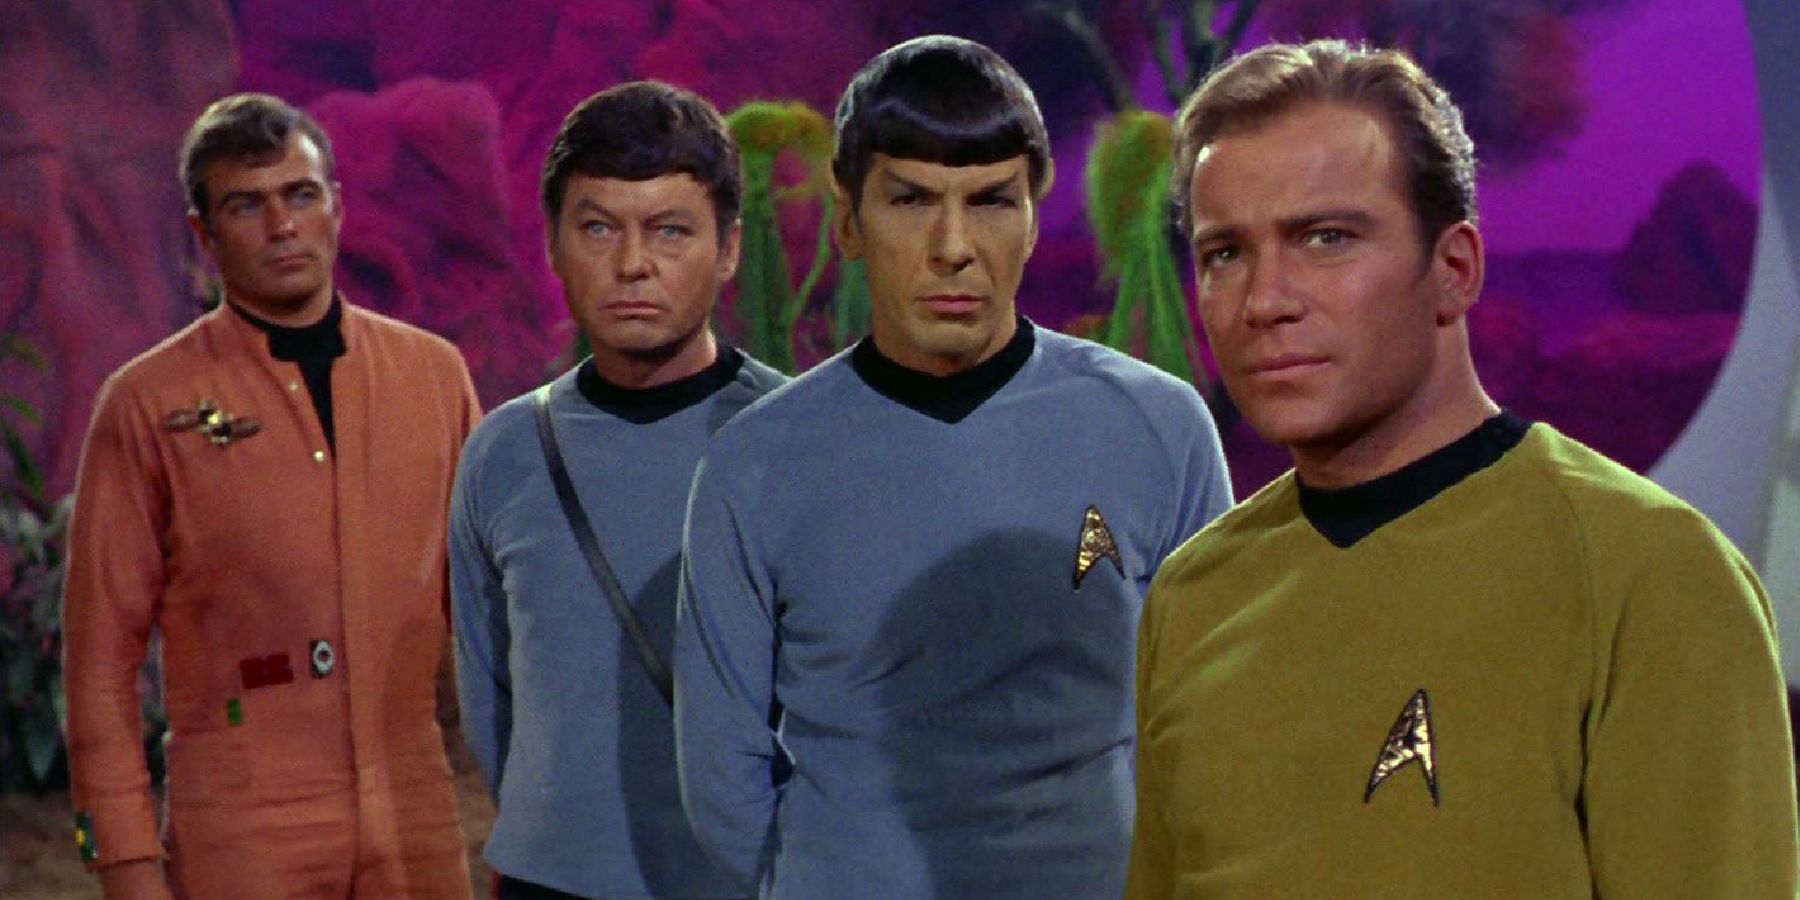 Glenn Corbett, DeForest Kelley, Leonard Nimoy, and William Shatner in Star Trek